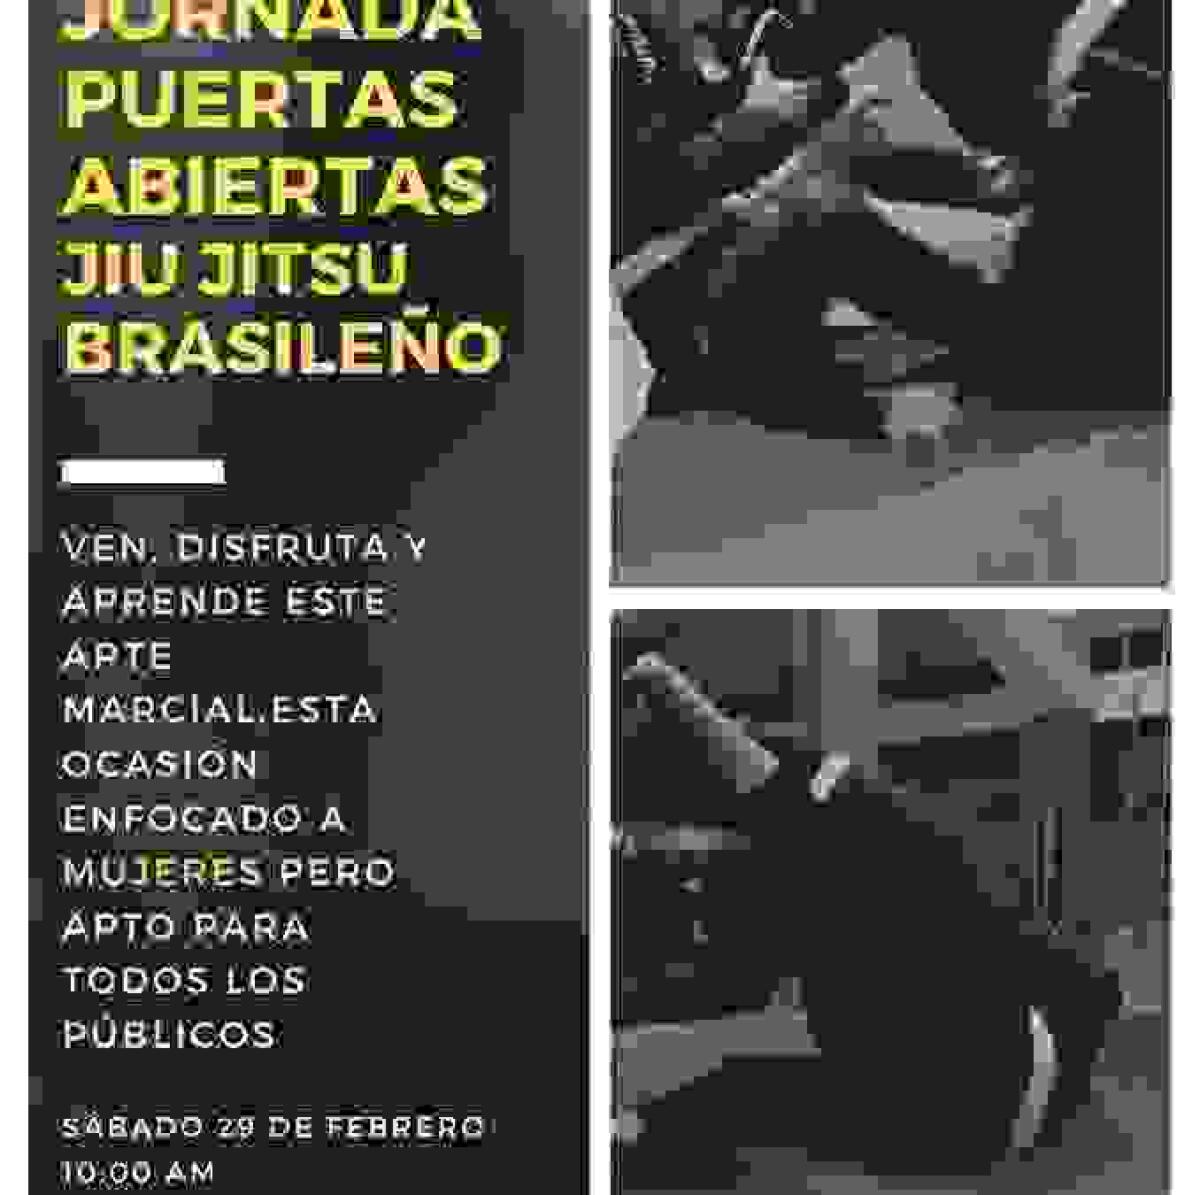 Jornada de Puertas Abiertas de ‘Jiu Jitsu Brasileño’ en el polideportivo de l’Alfàs